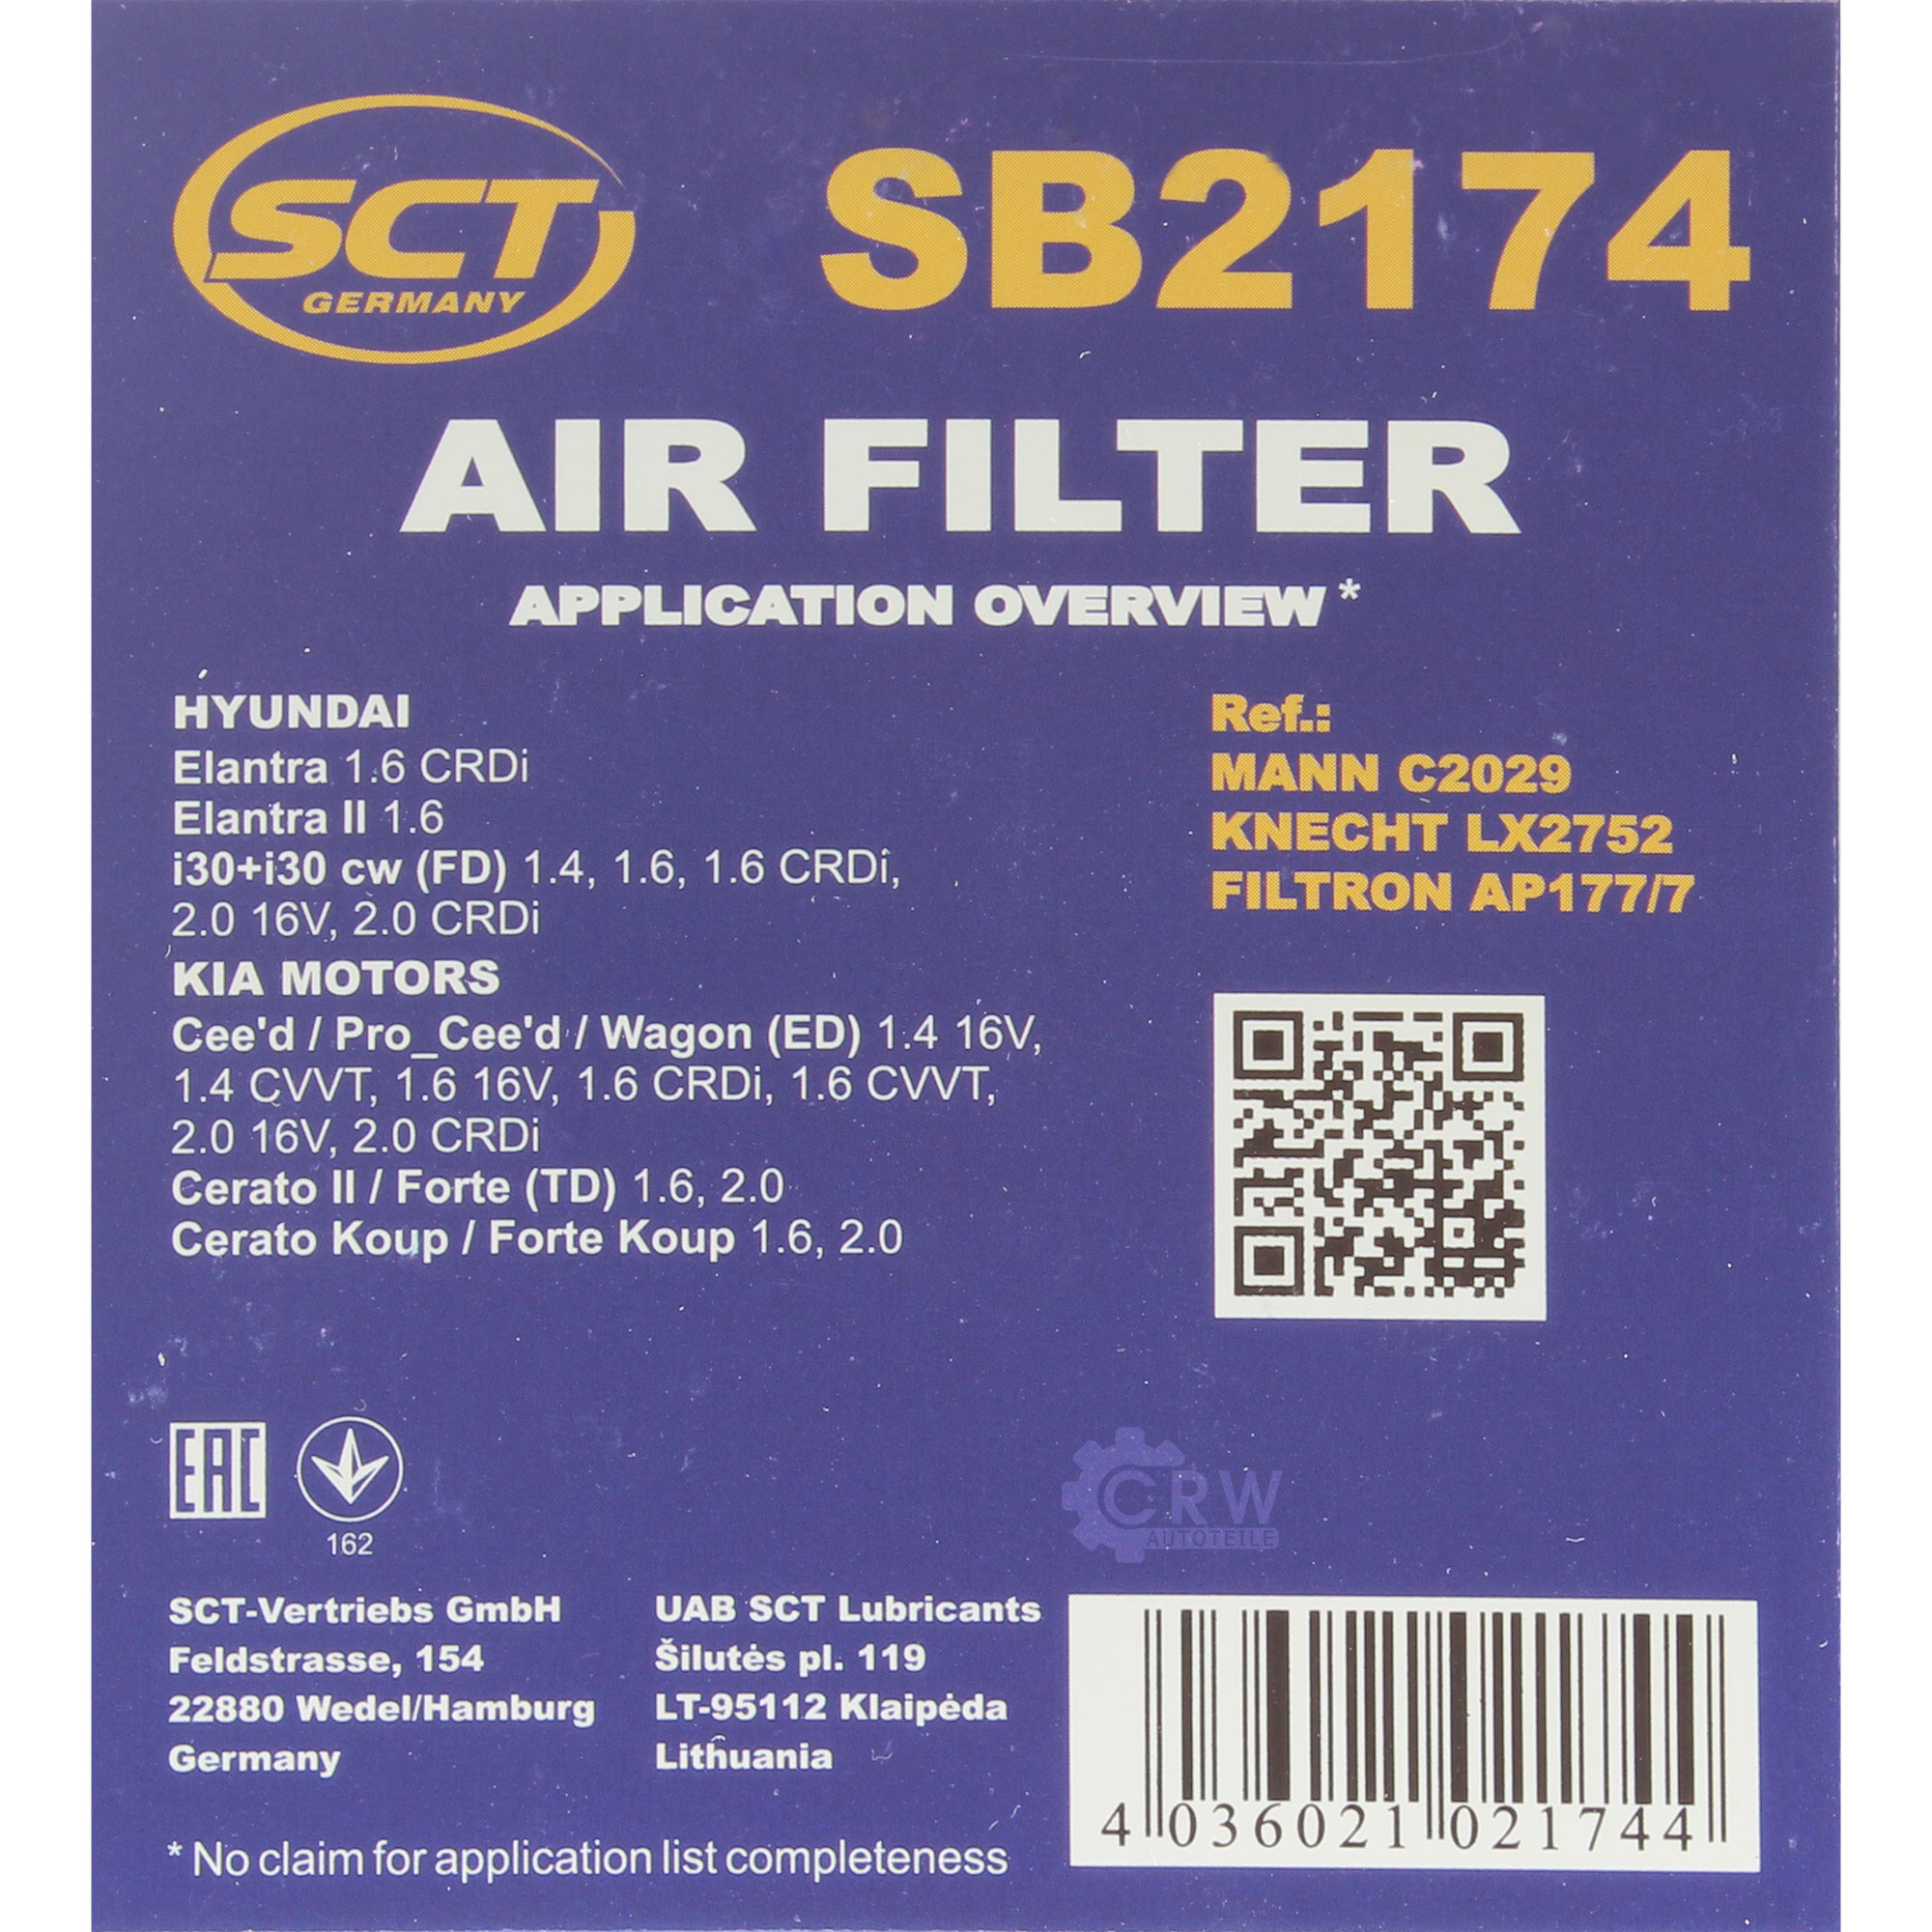 SCT Luftfilter Motorluftfilter SB 2174 Air Filter